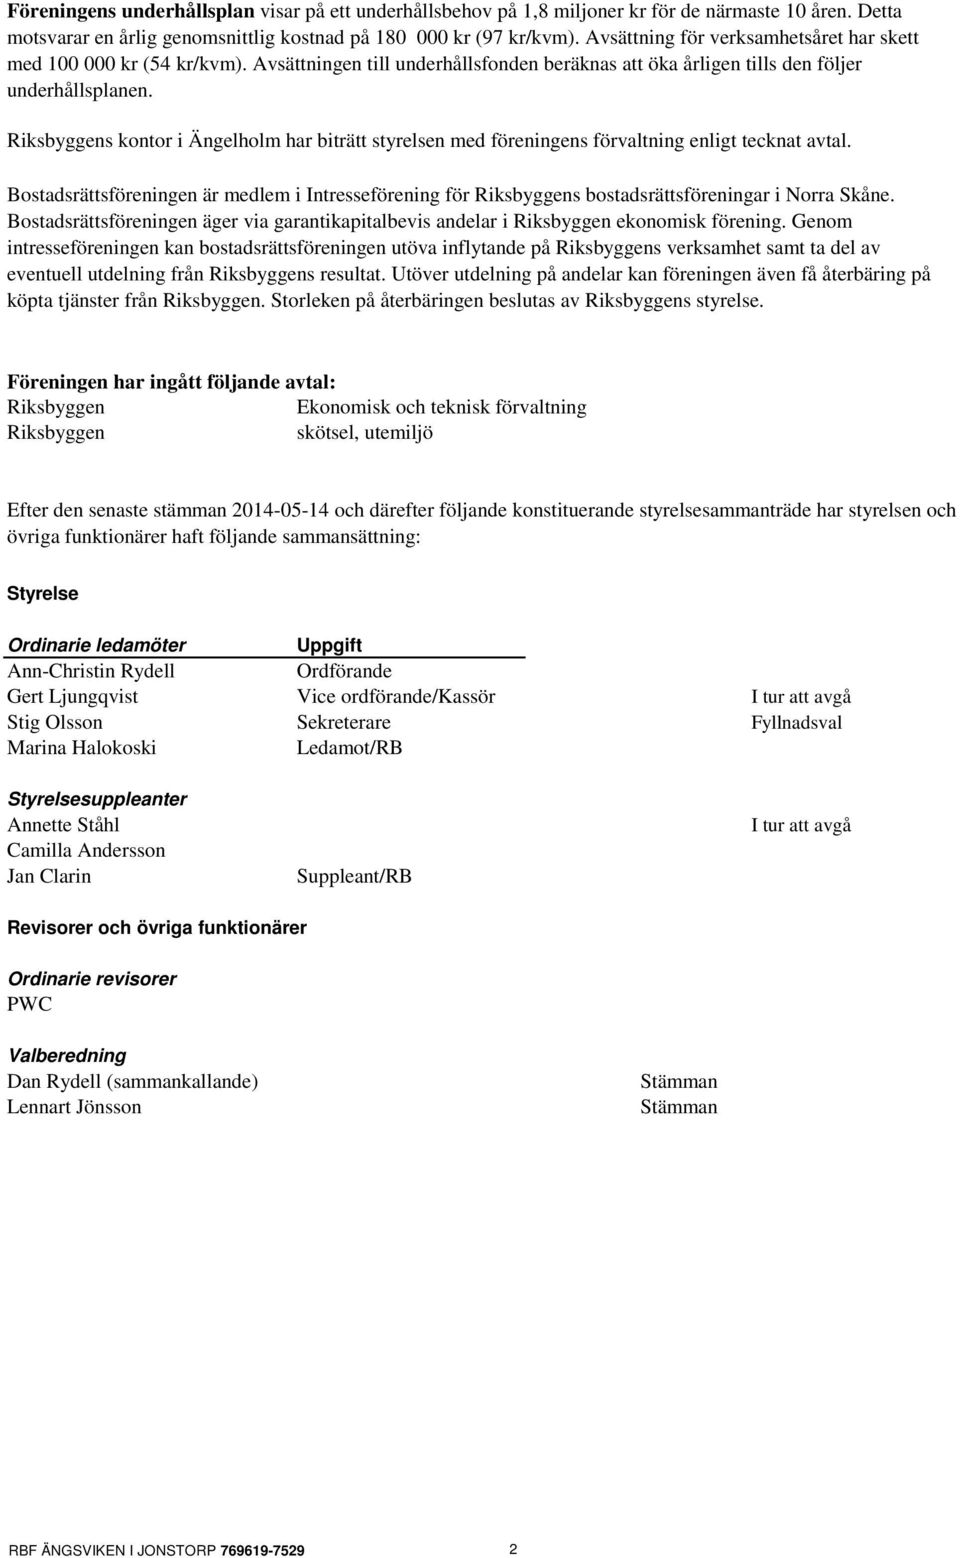 Riksbyggens kontor i Ängelholm har biträtt styrelsen med föreningens förvaltning enligt tecknat avtal.